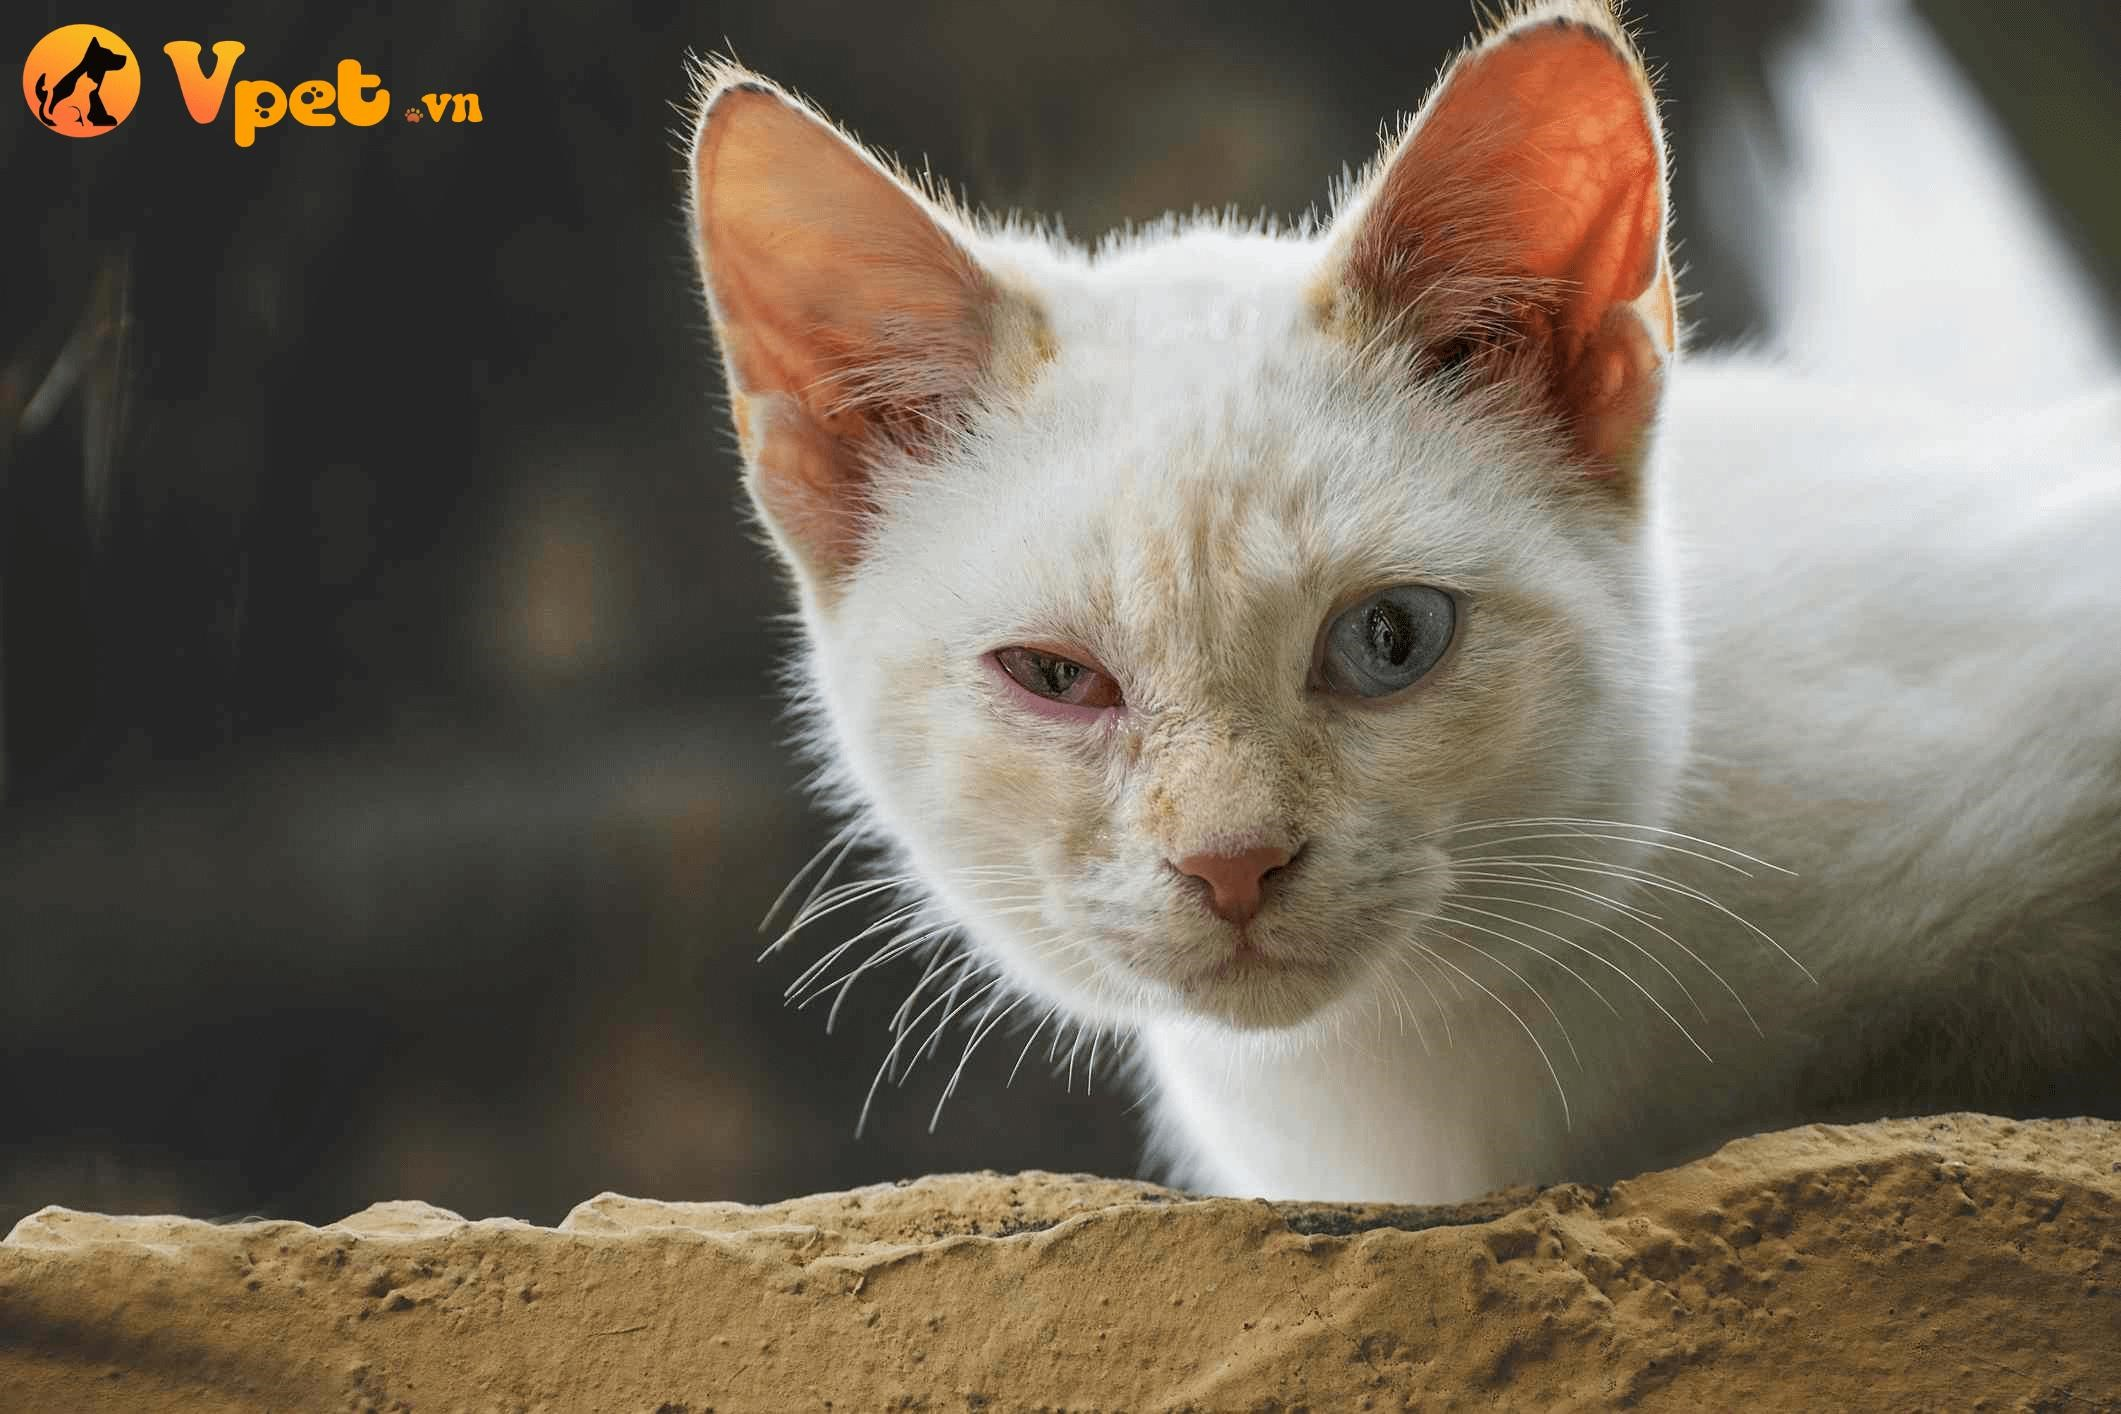 Tình trạng viêm kết mạc ở mèo thường do virus Herpes gây ra.